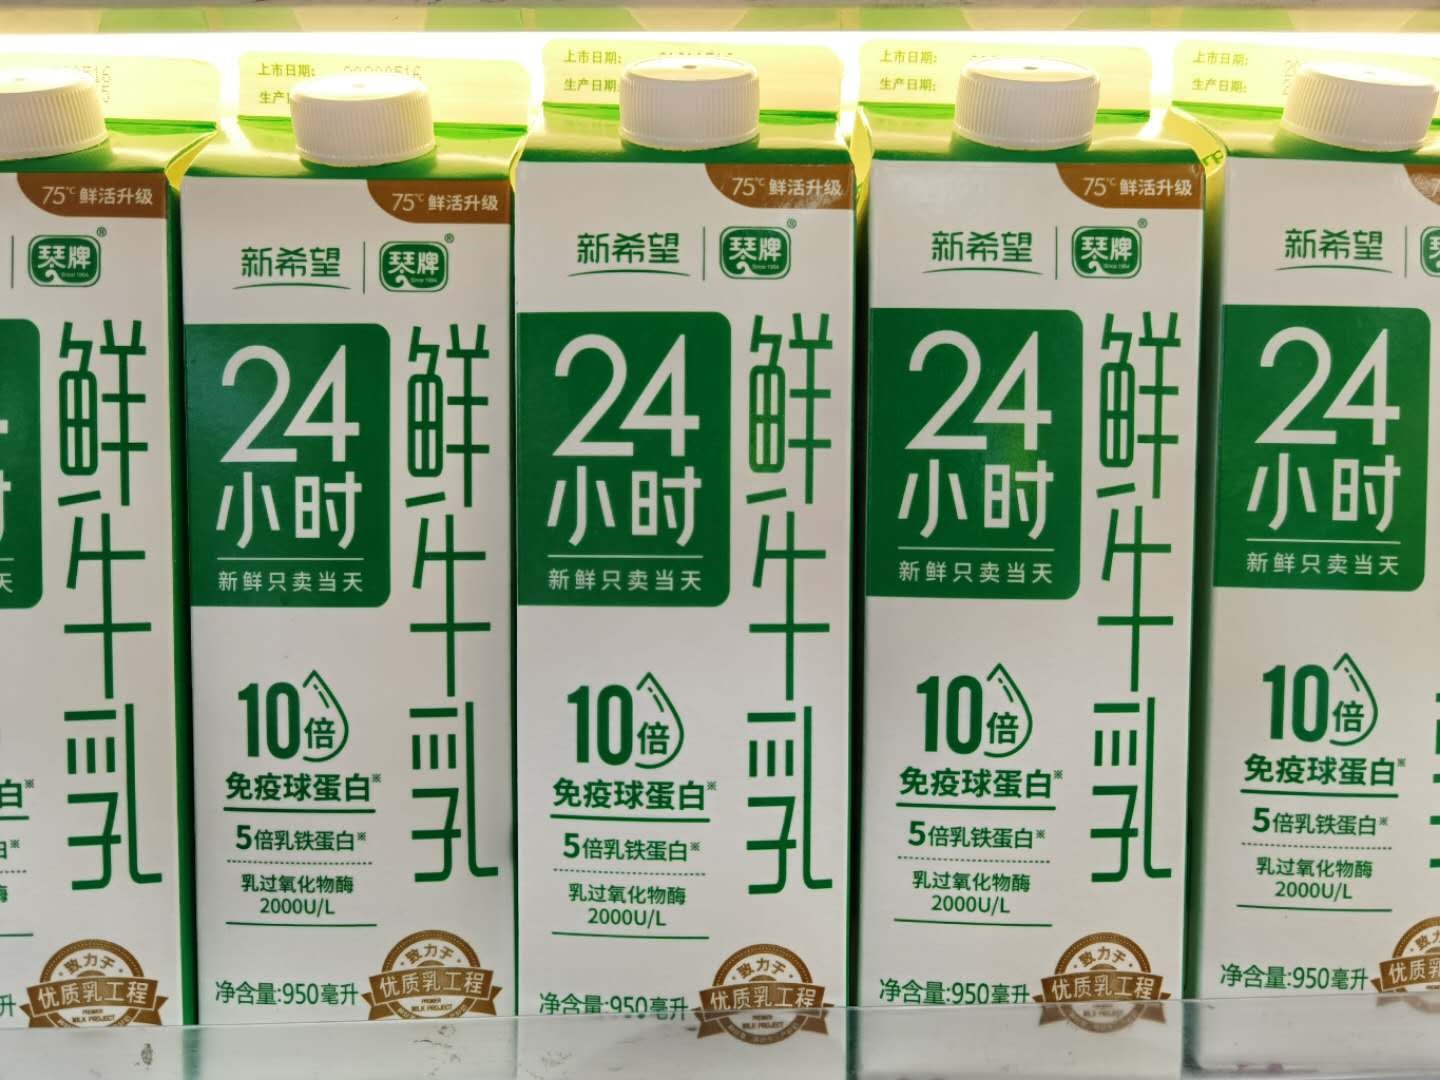 国产奶放心喝新希望琴牌24小时鲜牛奶10倍实力当道